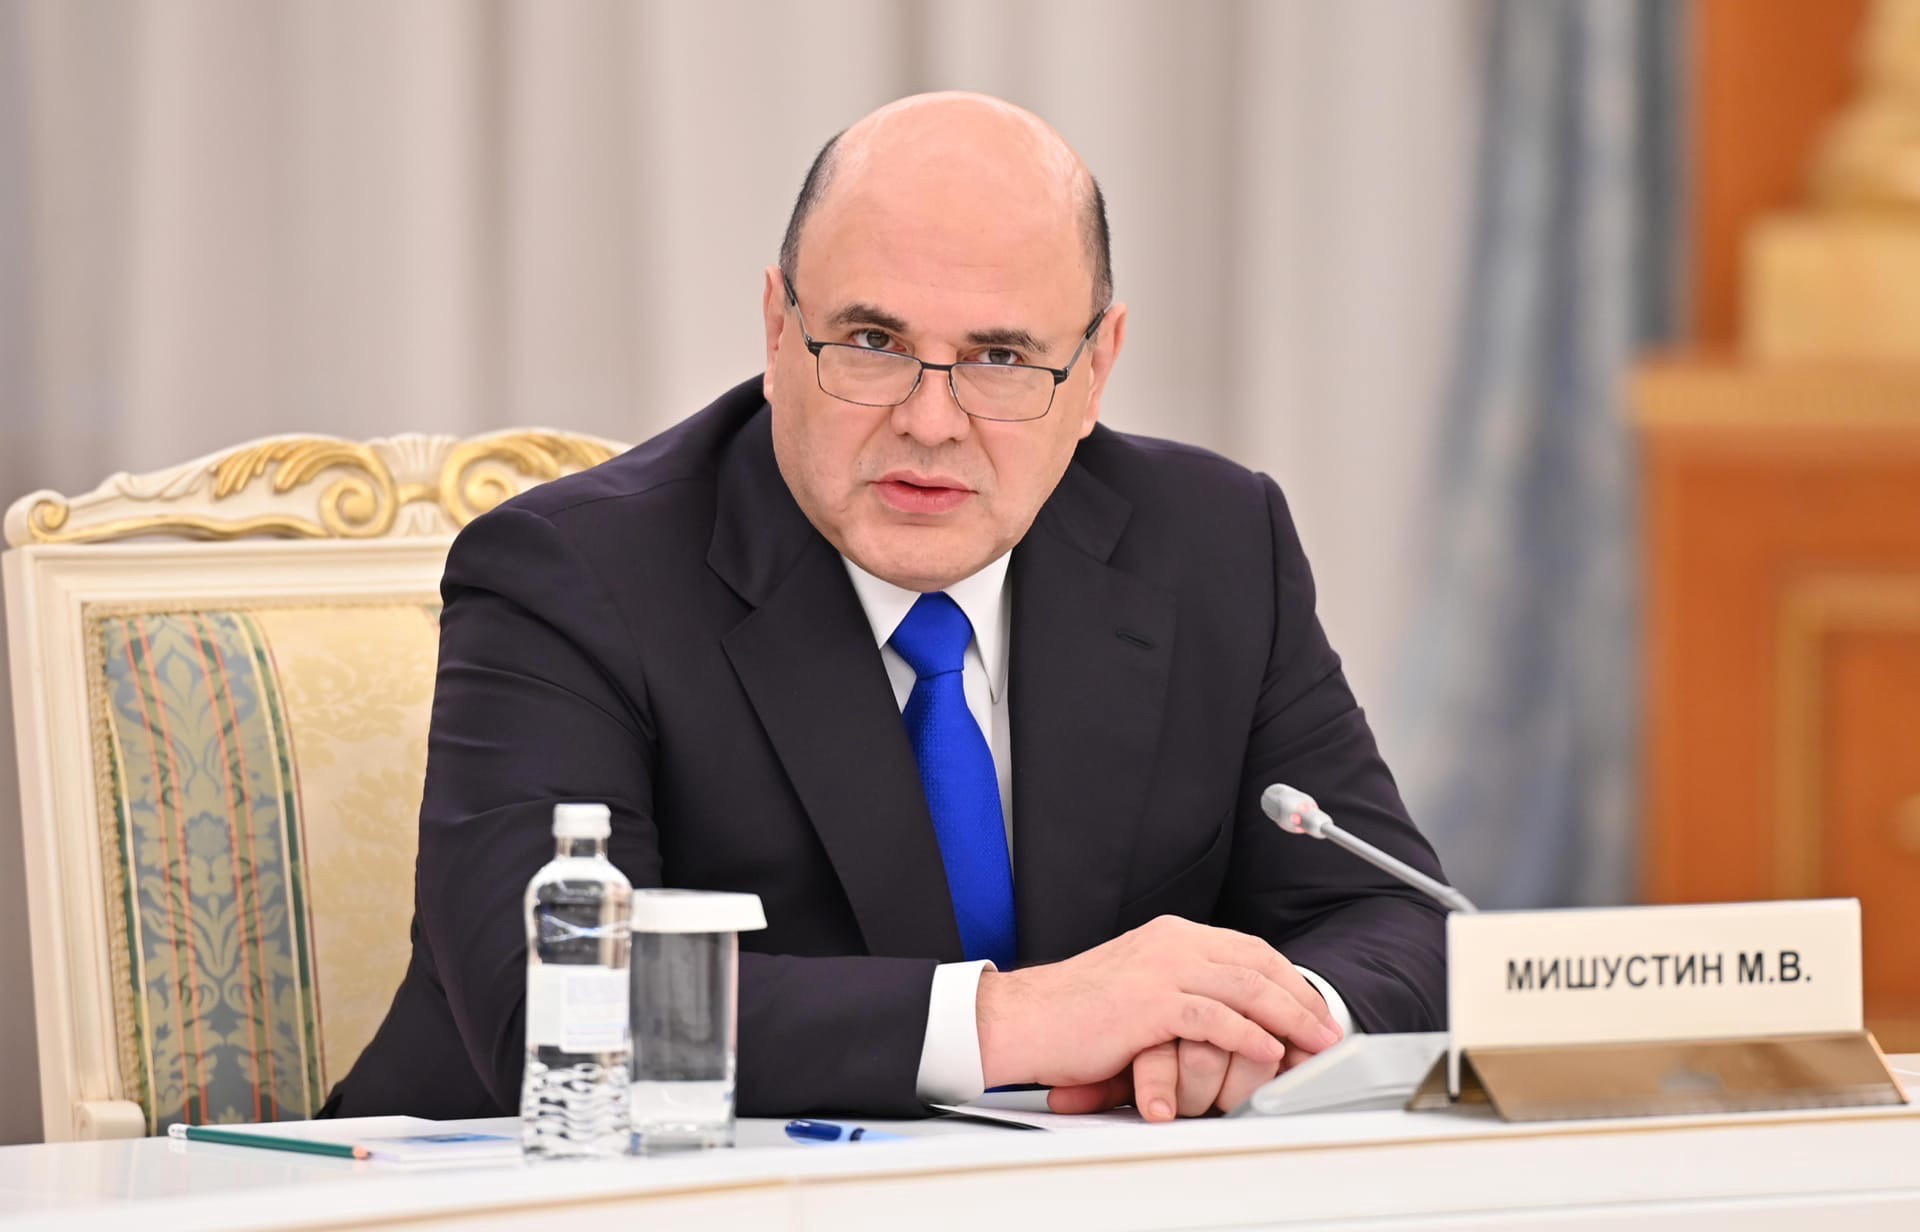 Мишустин 4 марта проведёт переговоры с новым премьером Казахстана